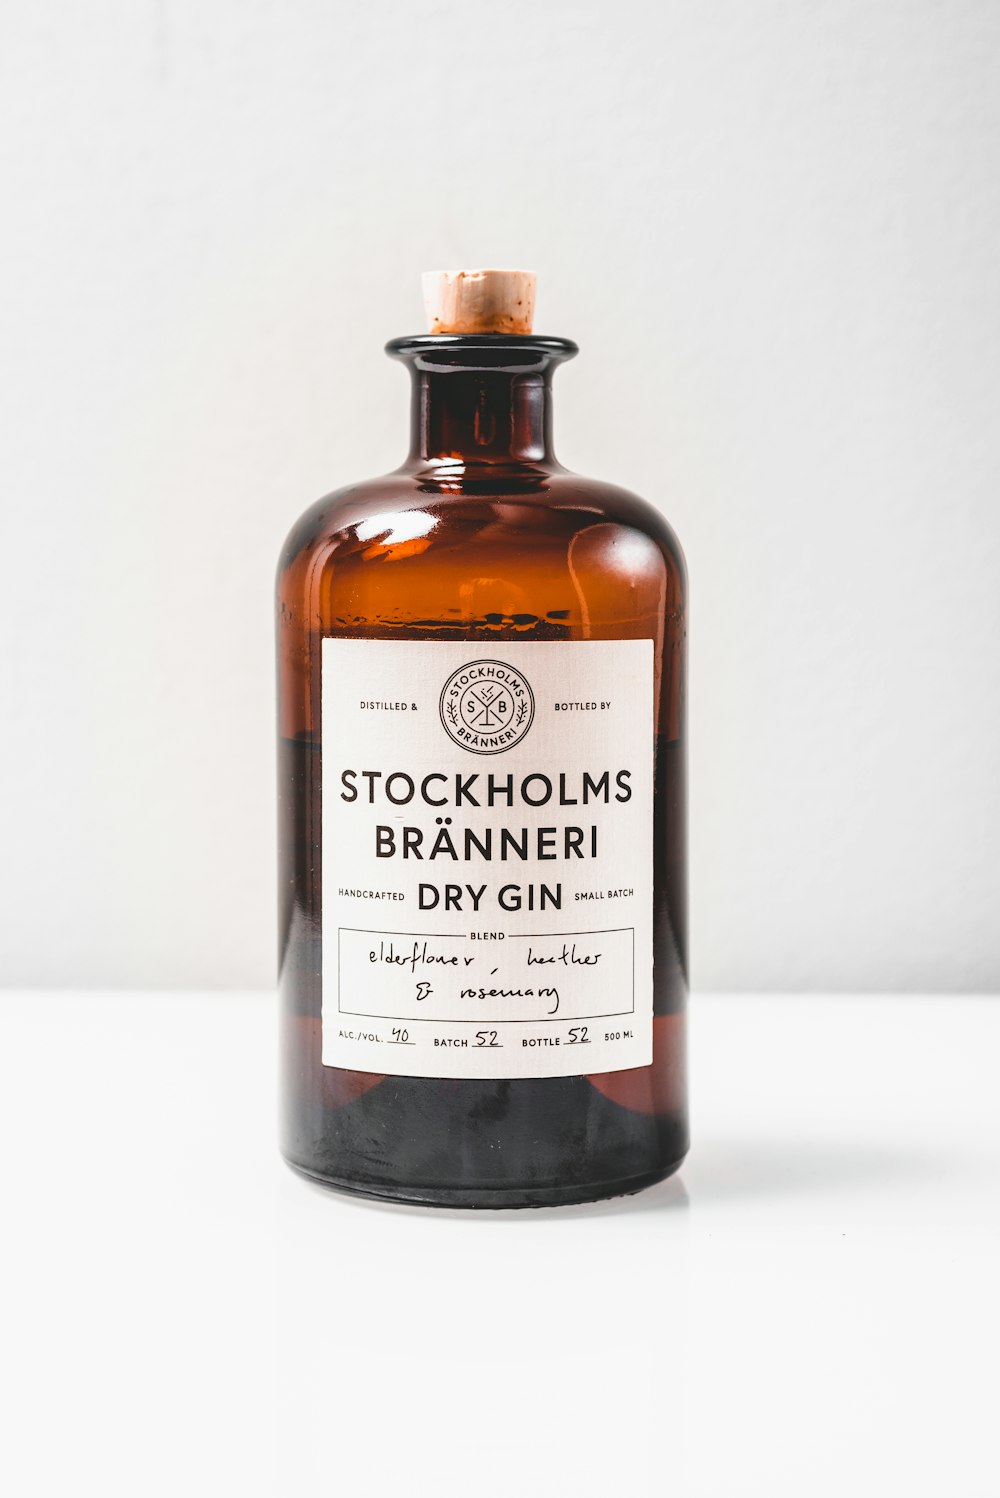 a bottle of stockholls branneri dry gin